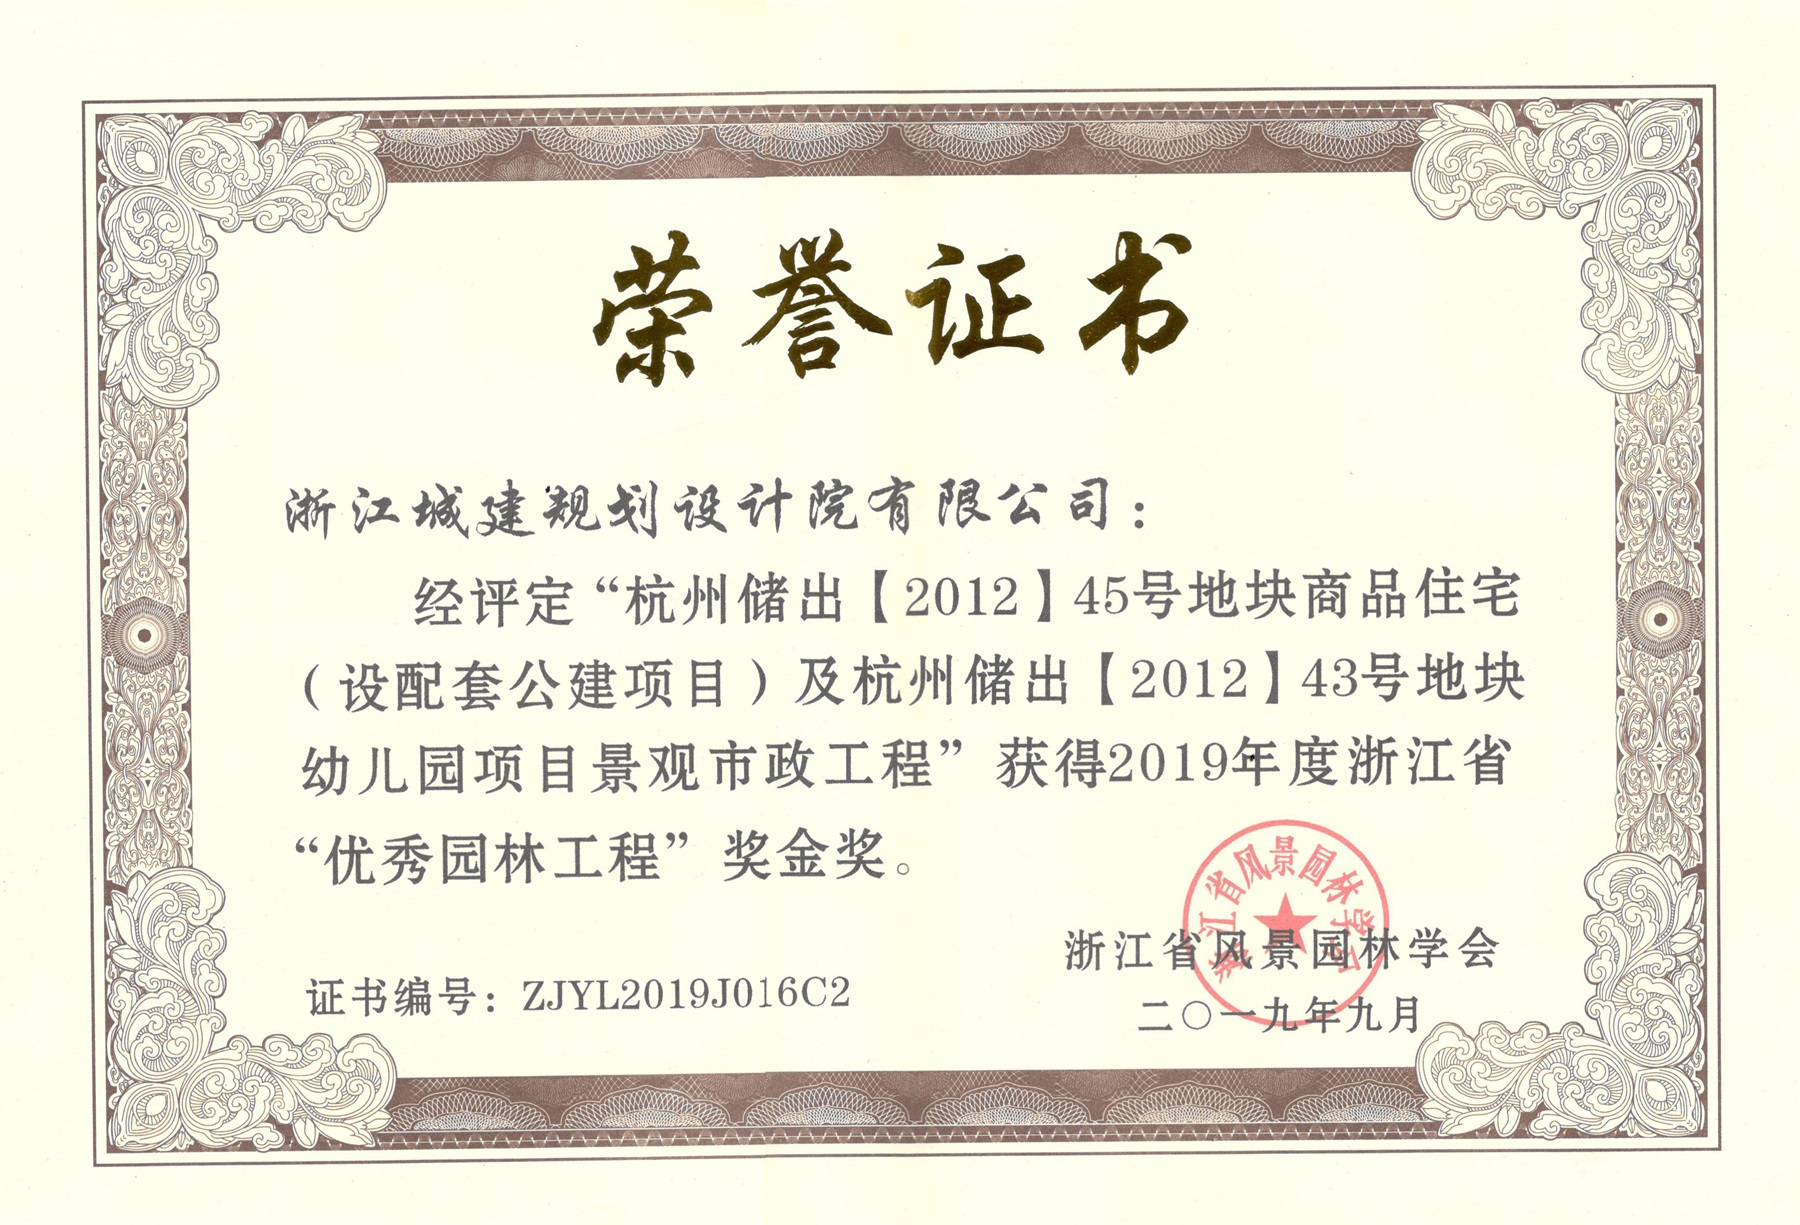 杭州儲出【2012】45號地塊商品住宅（設配套公建項目）及杭州儲出【2012】43號地塊幼兒園項目景觀市政工程